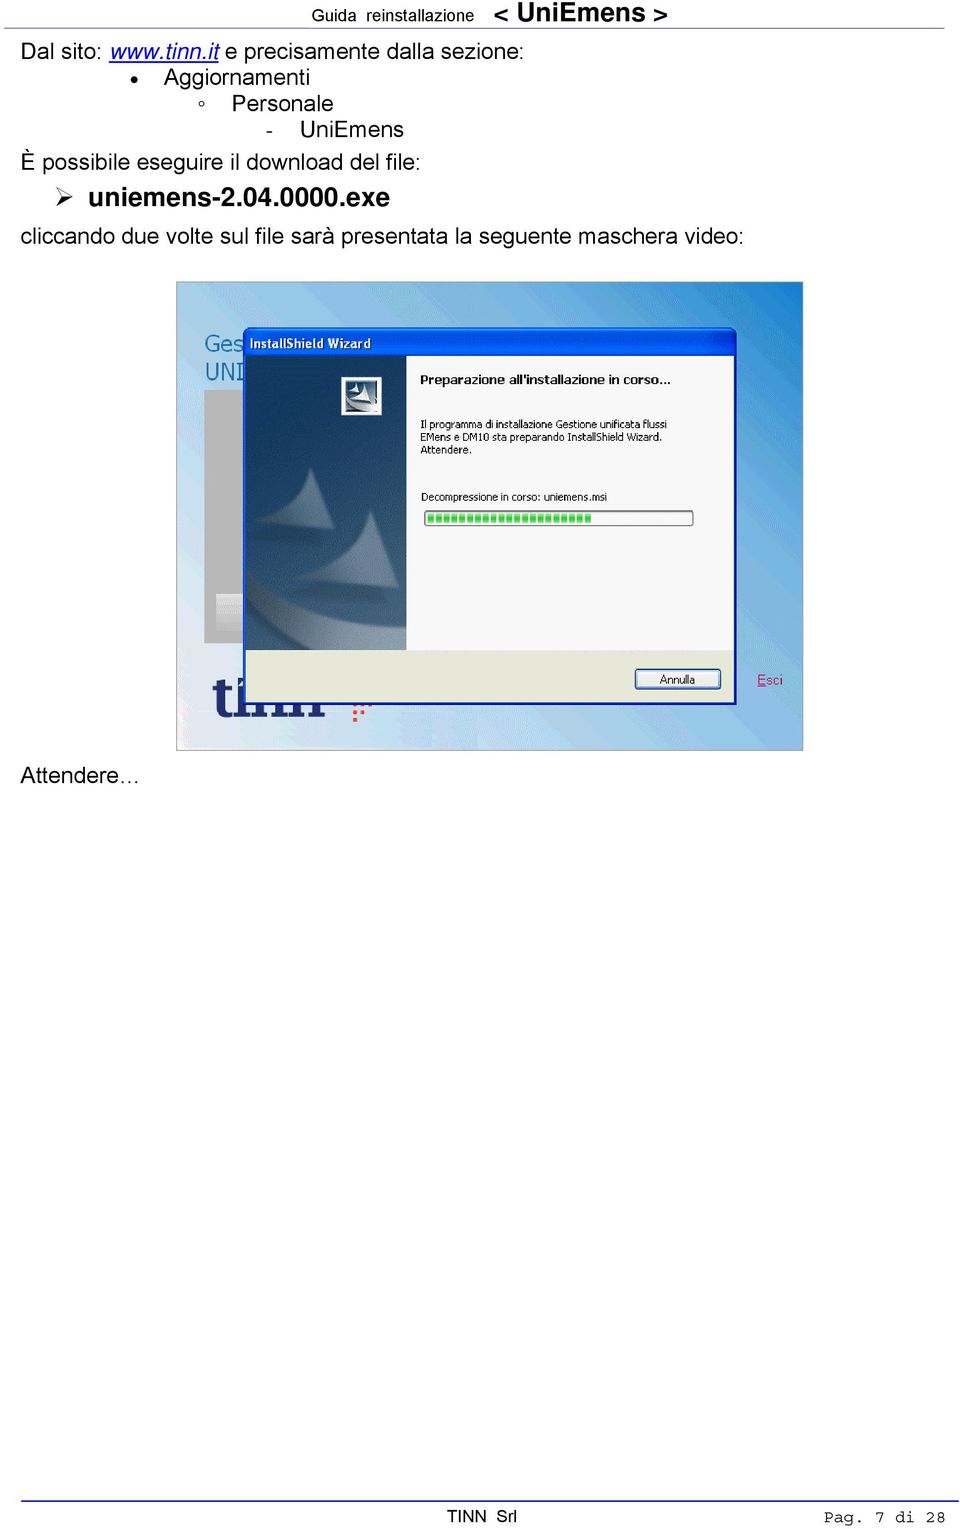 UniEmens È possibile eseguire il download del file: uniemens-2.